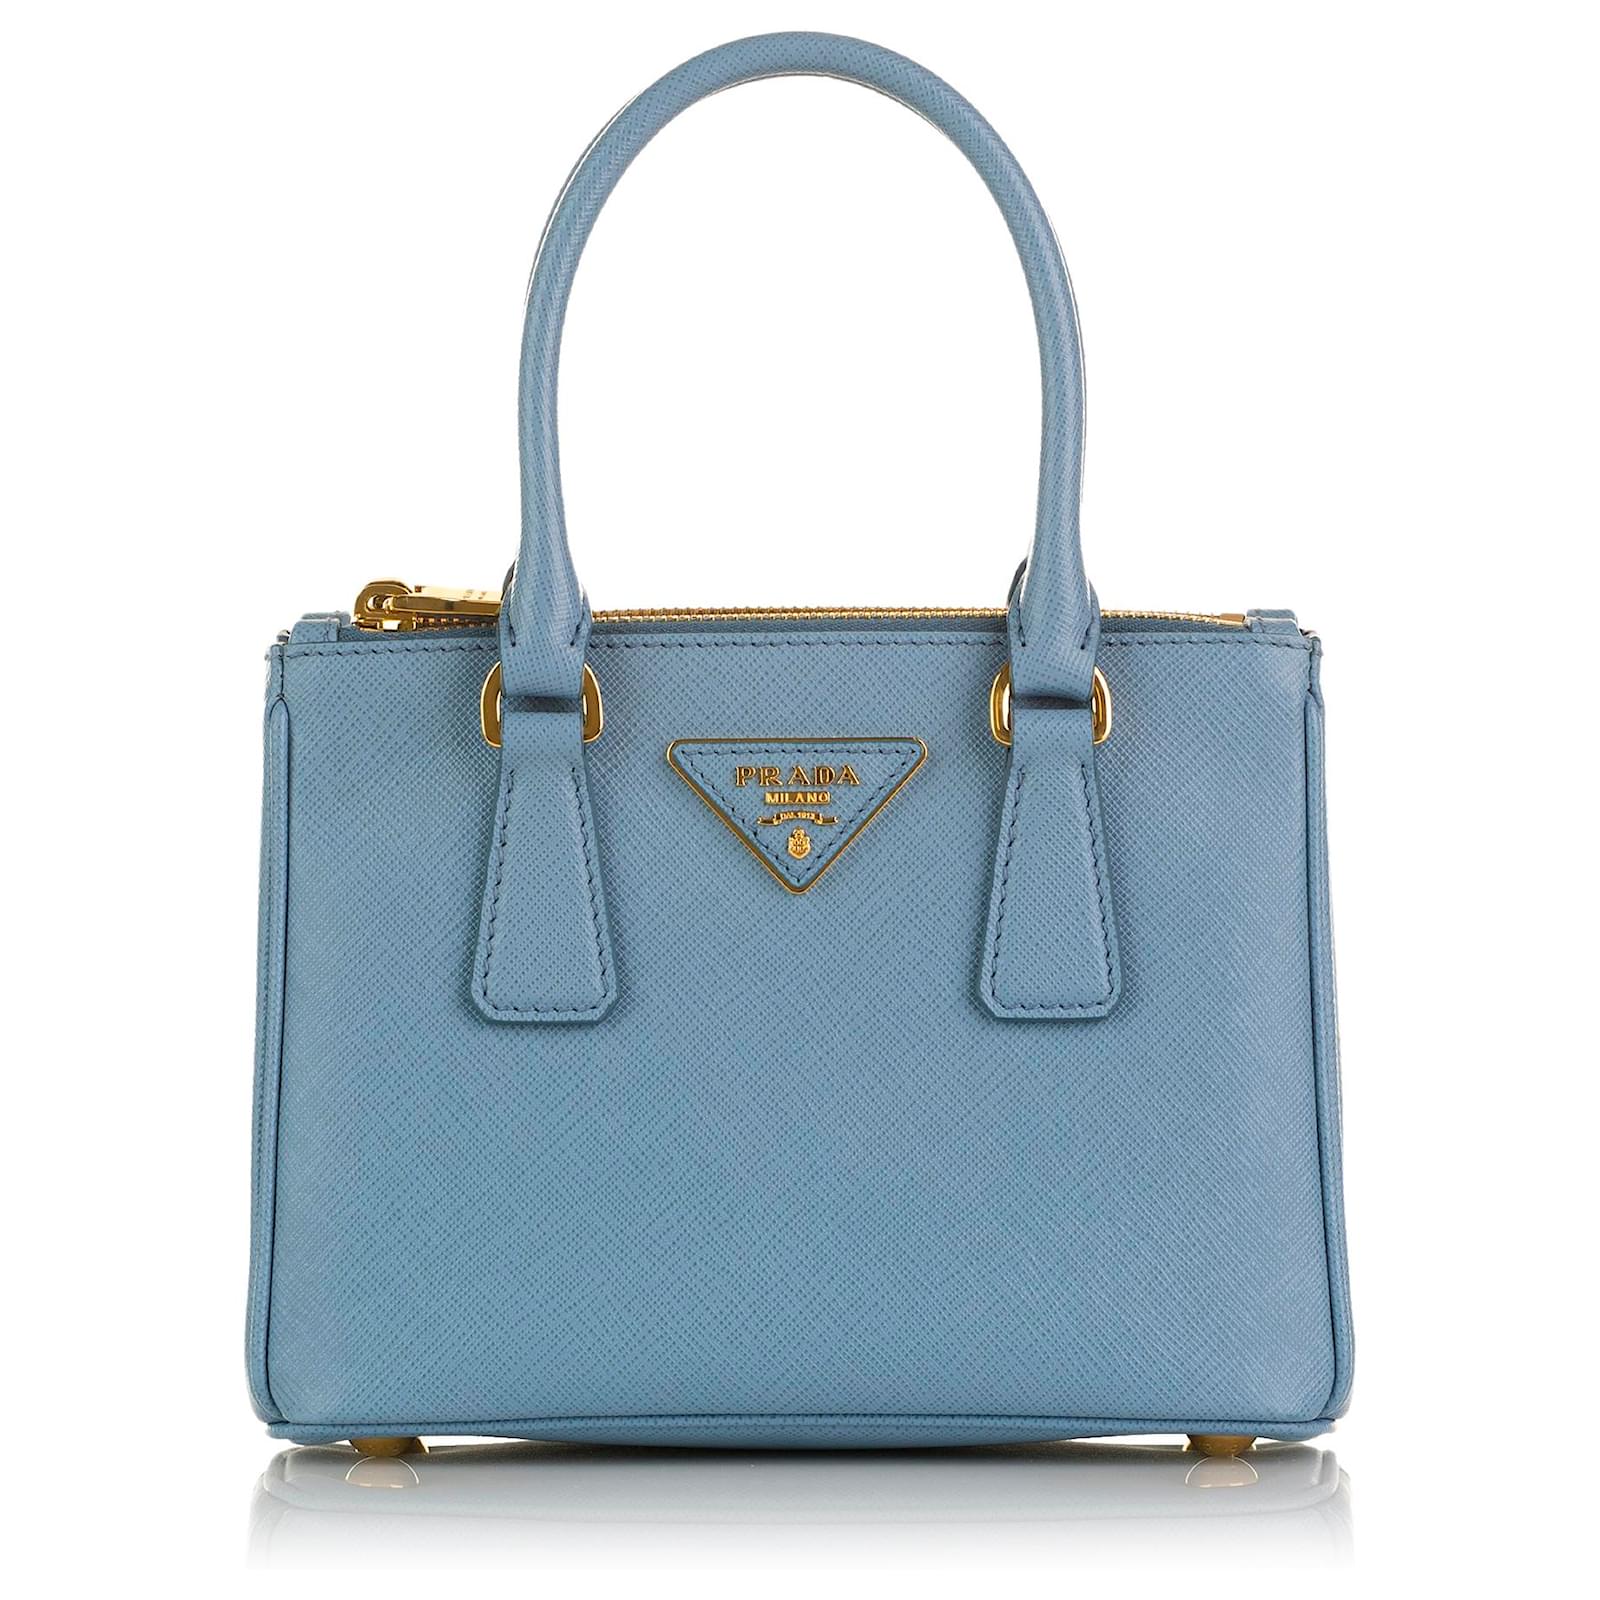 Prada, Bags, Prada Small Saffiano Leather Tote Handbag Blue